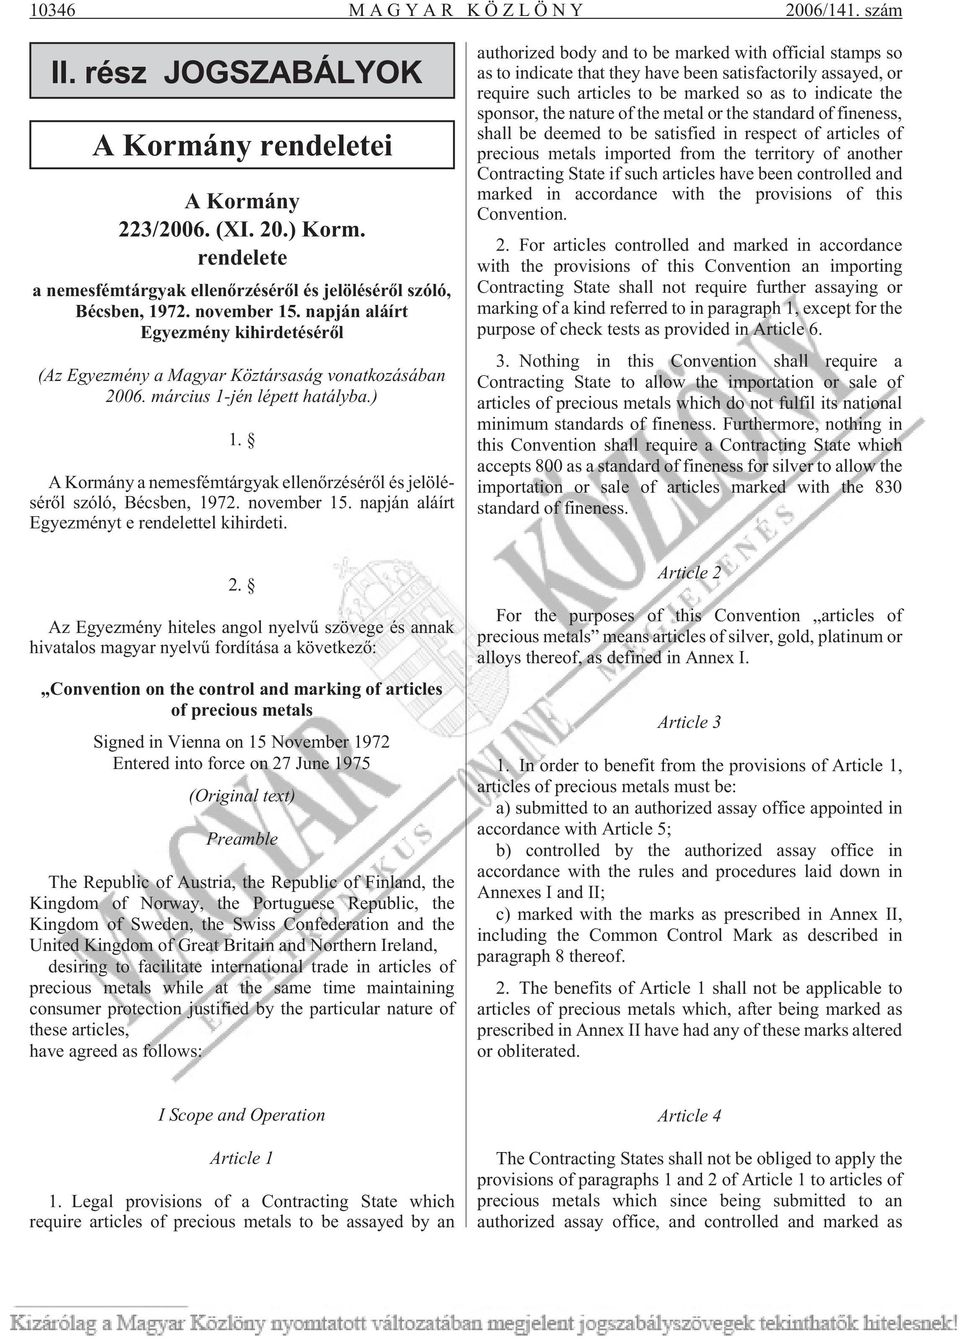 A Kormány a nemesfémtárgyak ellenõrzésérõl és jelölésérõl szóló, Bécsben, 1972. november 15. napján aláírt Egyezményt e rendelettel kihirdeti. 2.